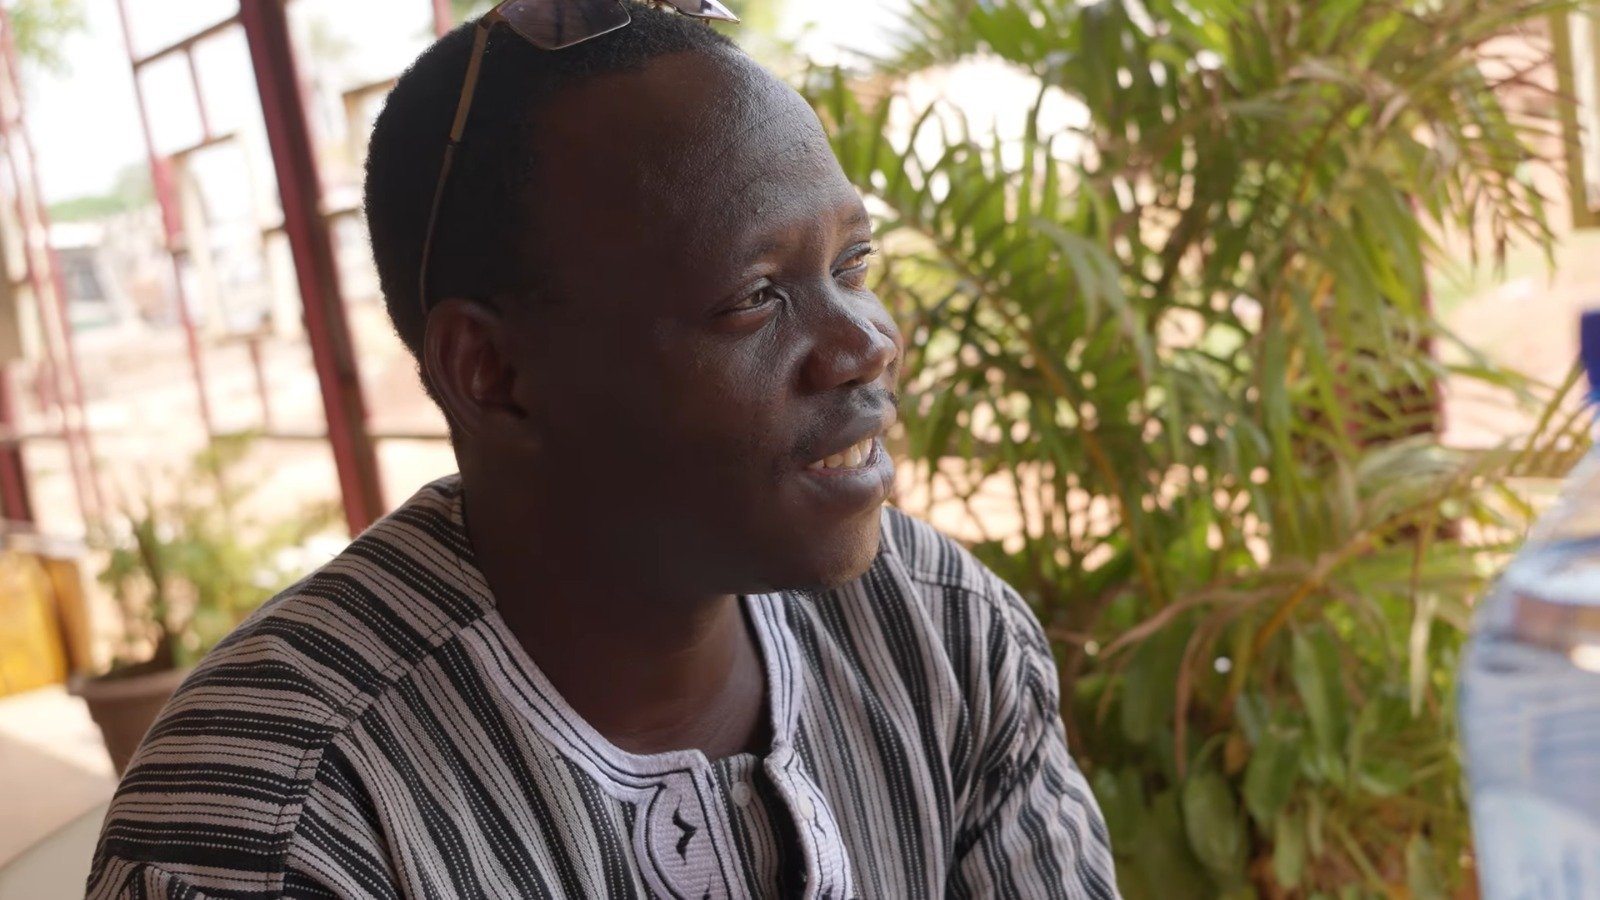 Jurado de morte por extremistas islâmicos, pastor volta a pregar: “É a minha alegria”